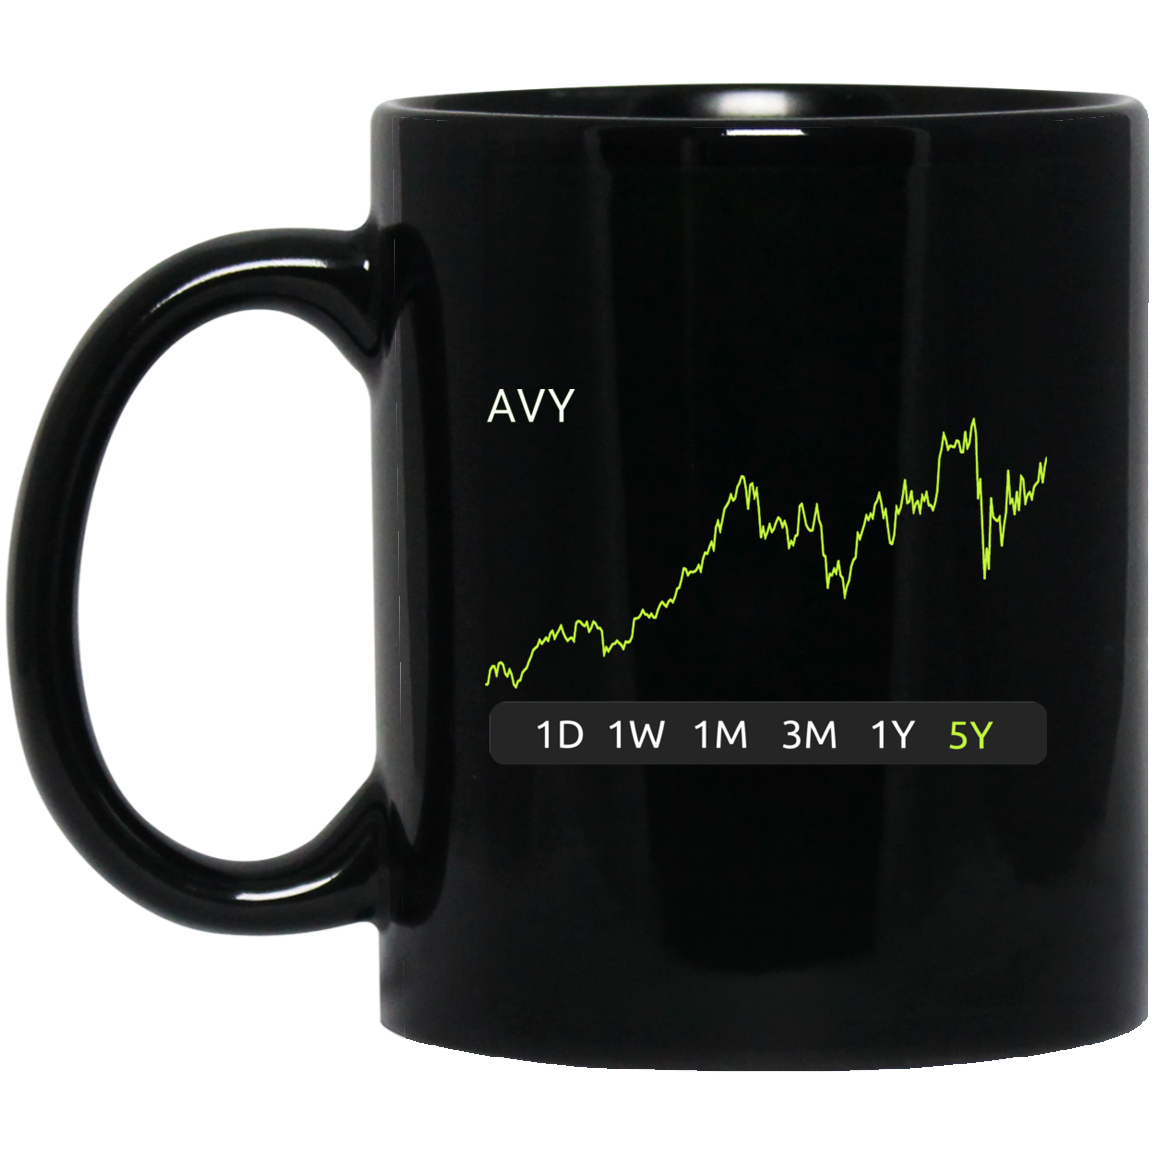 AVY Stock 5y Mug